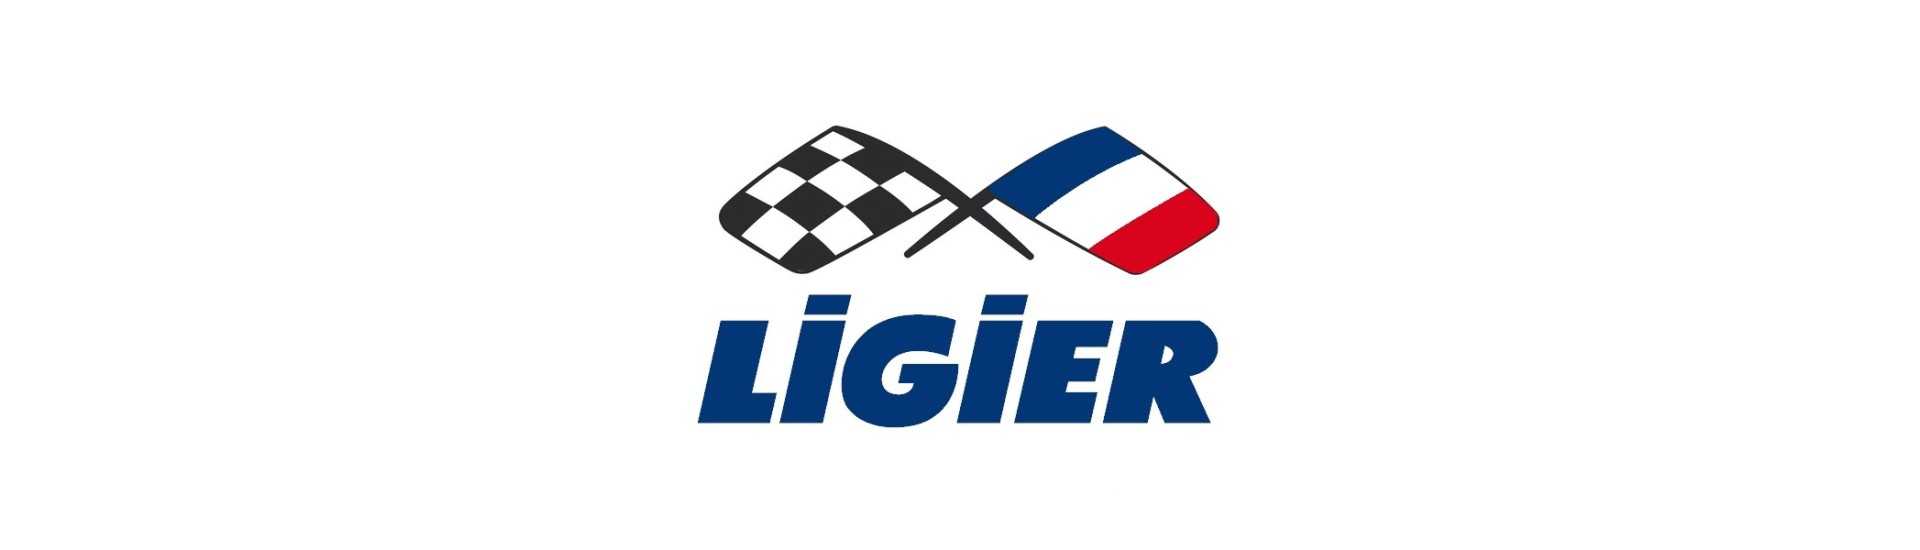 Vindrutebelopp till bästa pris för en bil utan körkort Ligier